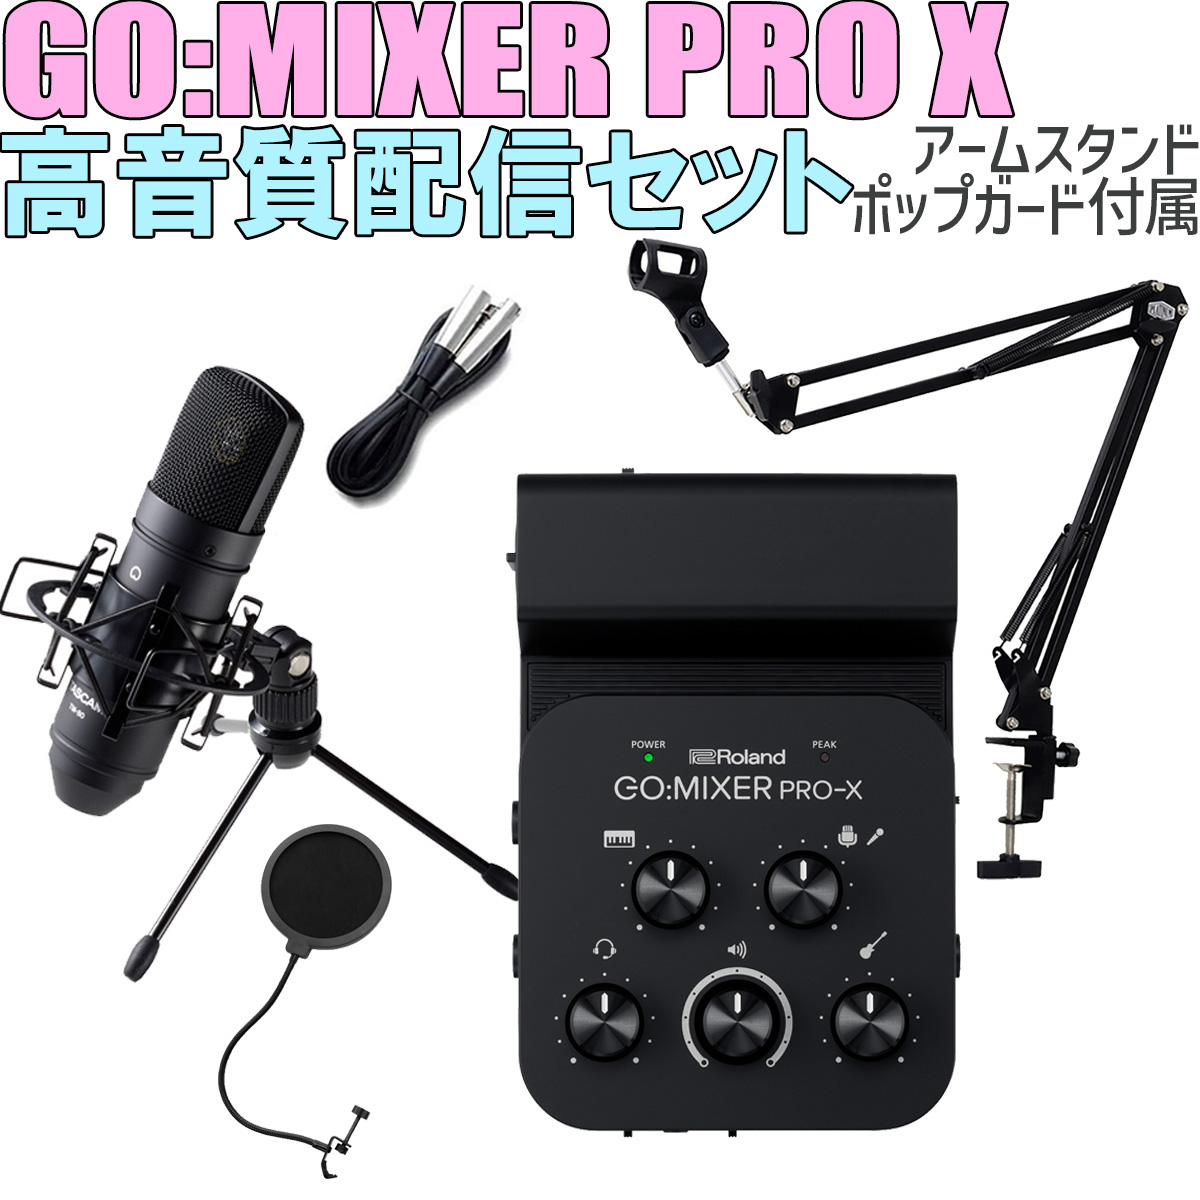 Roland GO:MIXER PRO-X TASCAM製コンデンサーマイク 高音質配信セット 